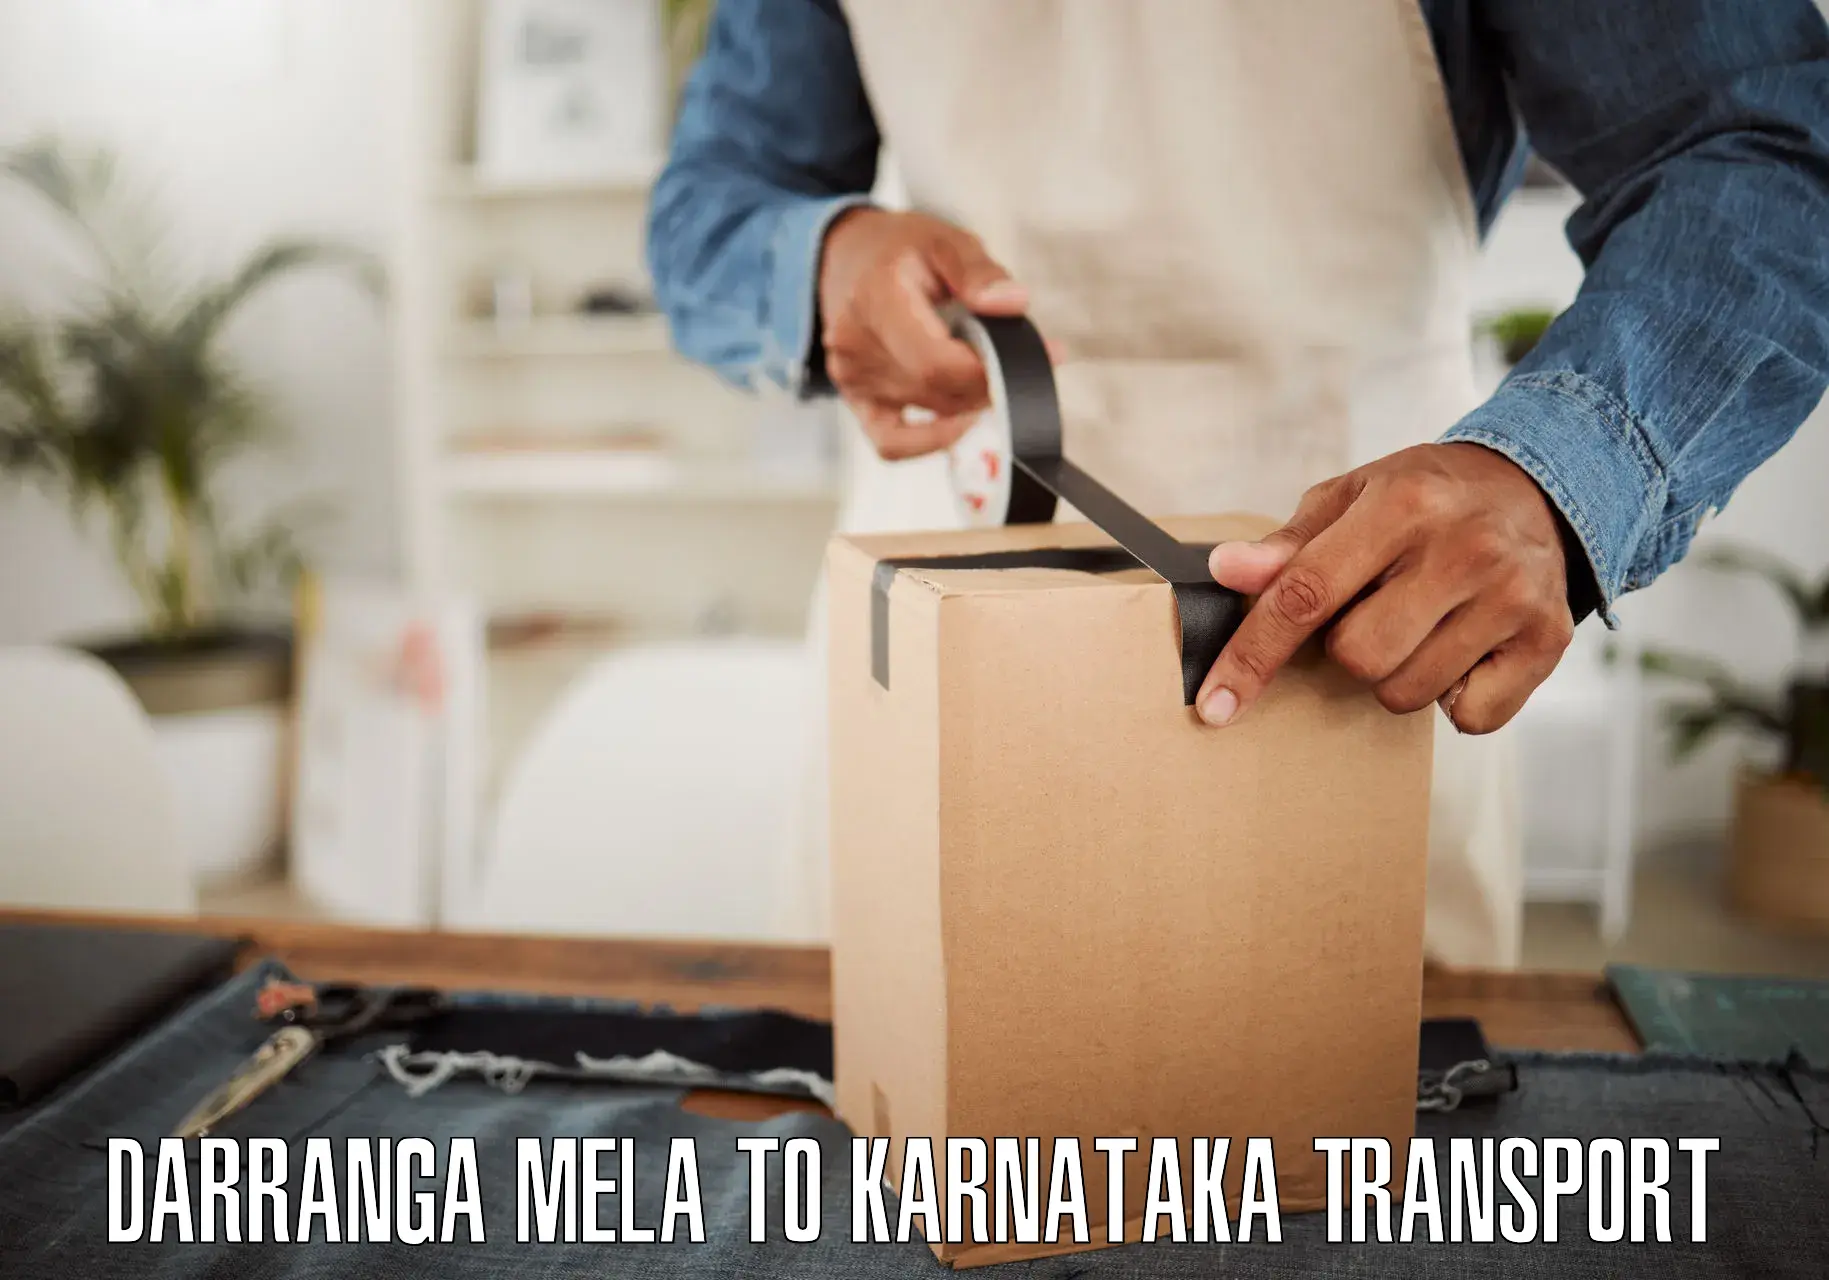 Furniture transport service Darranga Mela to Savanur